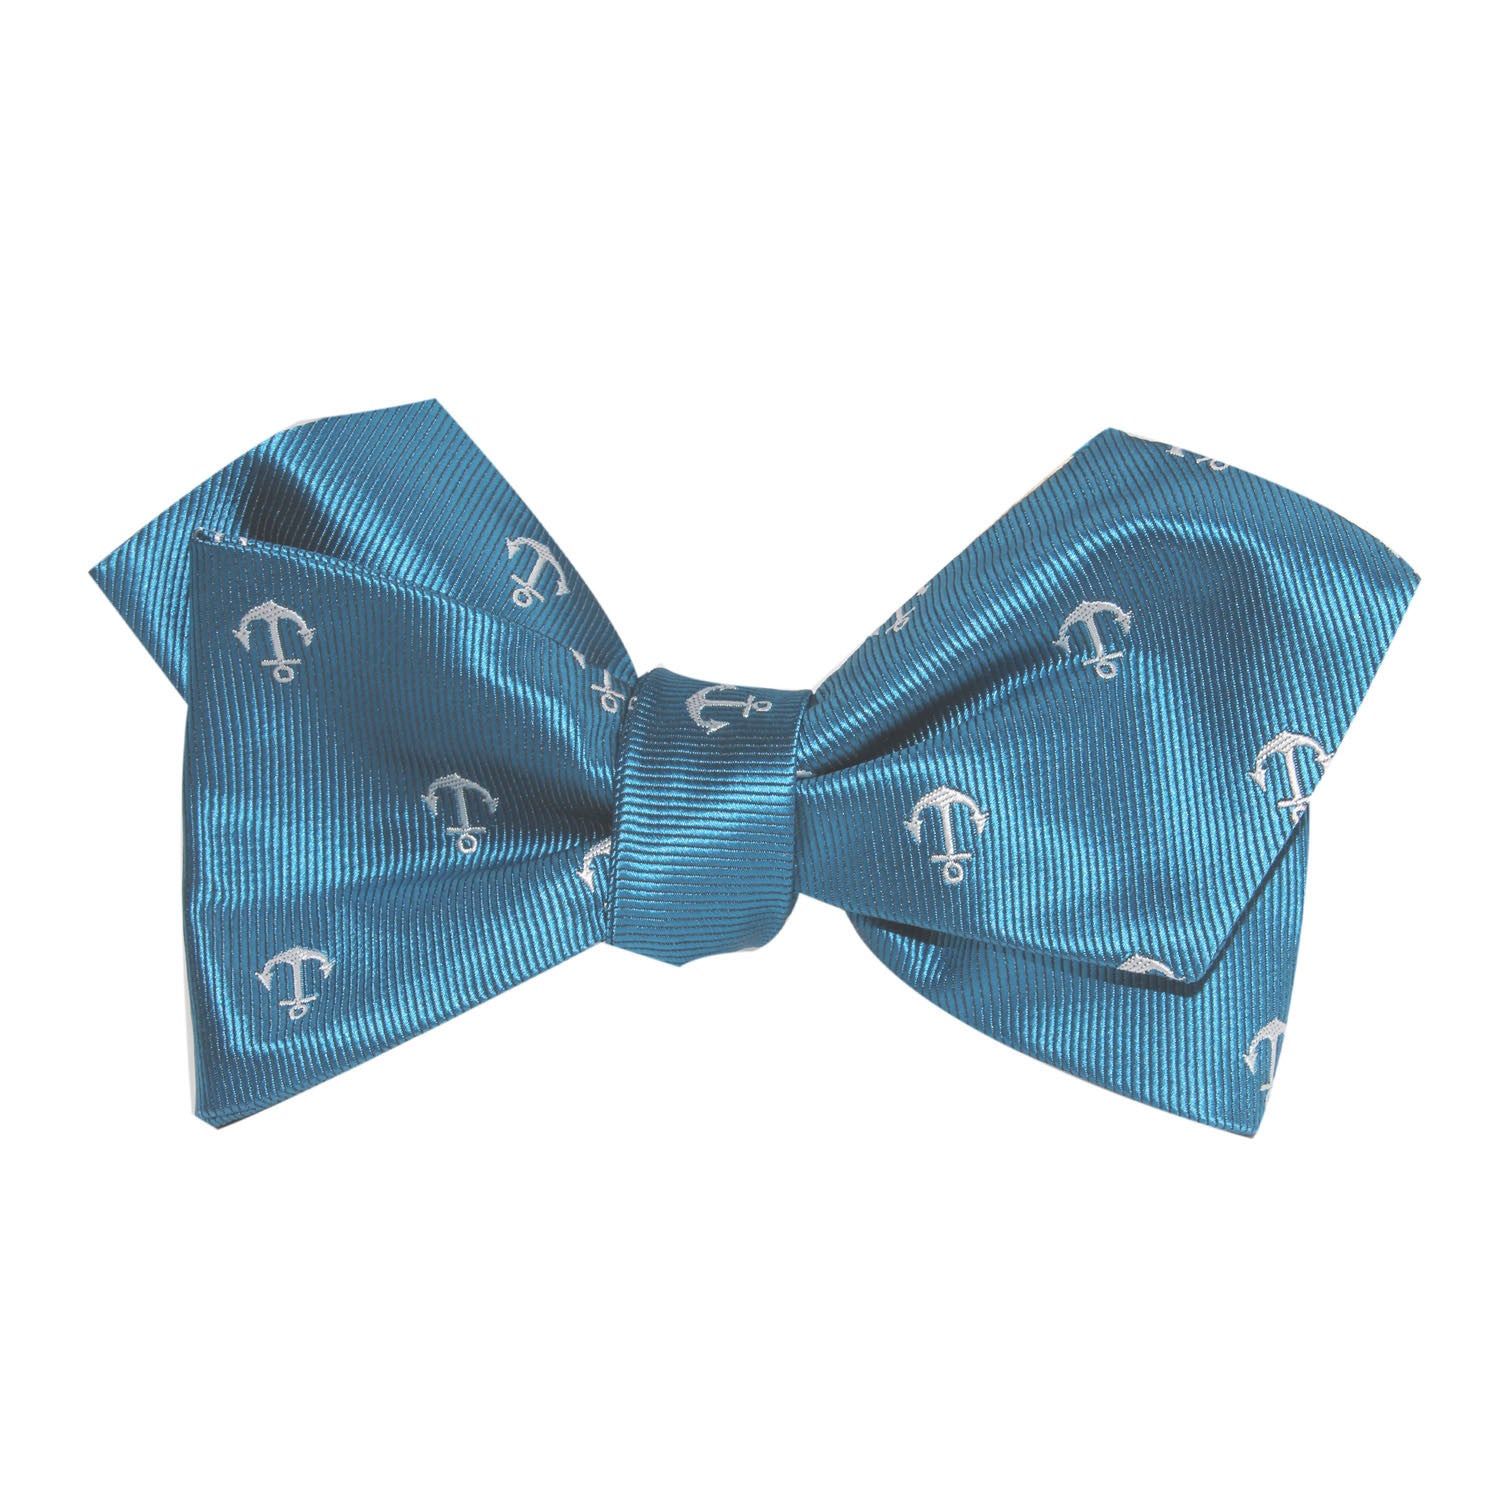 The OTAA Teal Blue Anchor Self Tie Diamond Tip Bow Tie 2